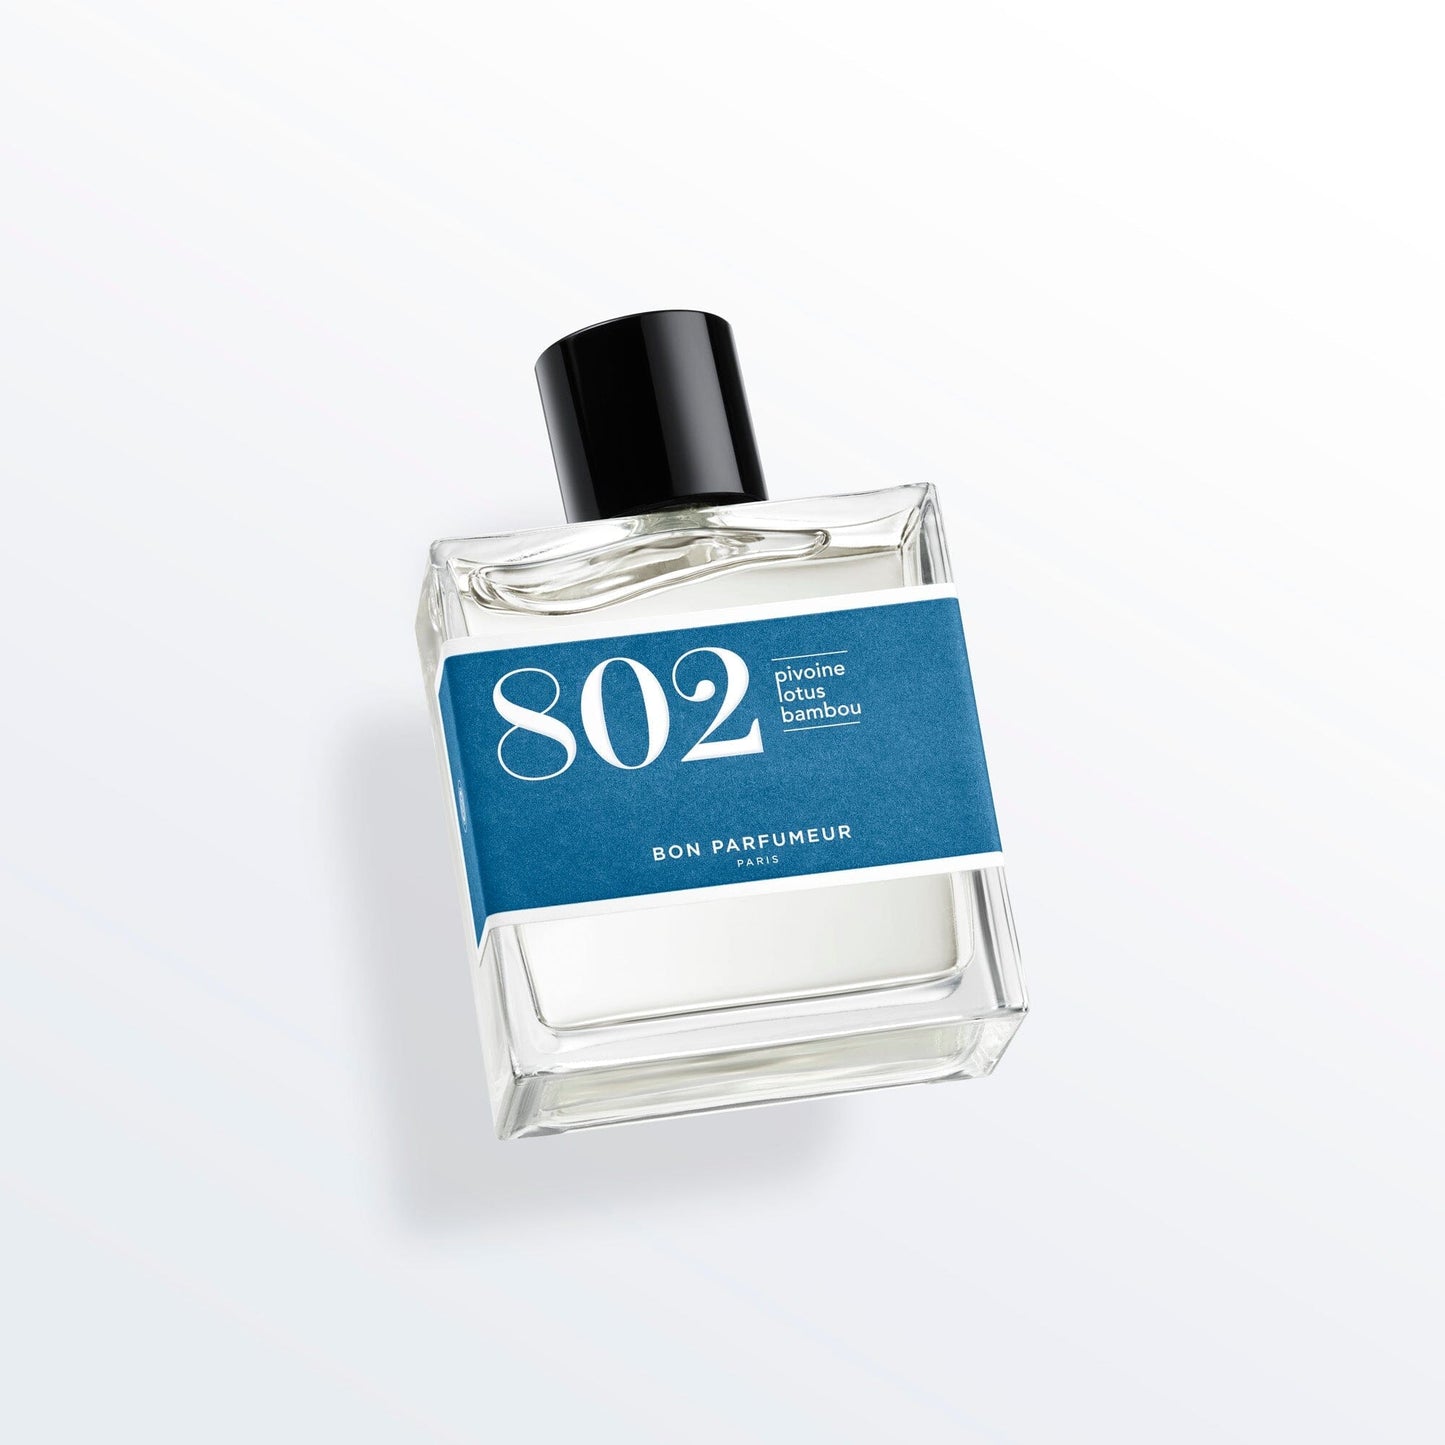 Eau de parfum 802 à la pivoine, au lotus et au bambou Eau de parfum Bon Parfumeur France 100ml+15ml (15ml -50%) 